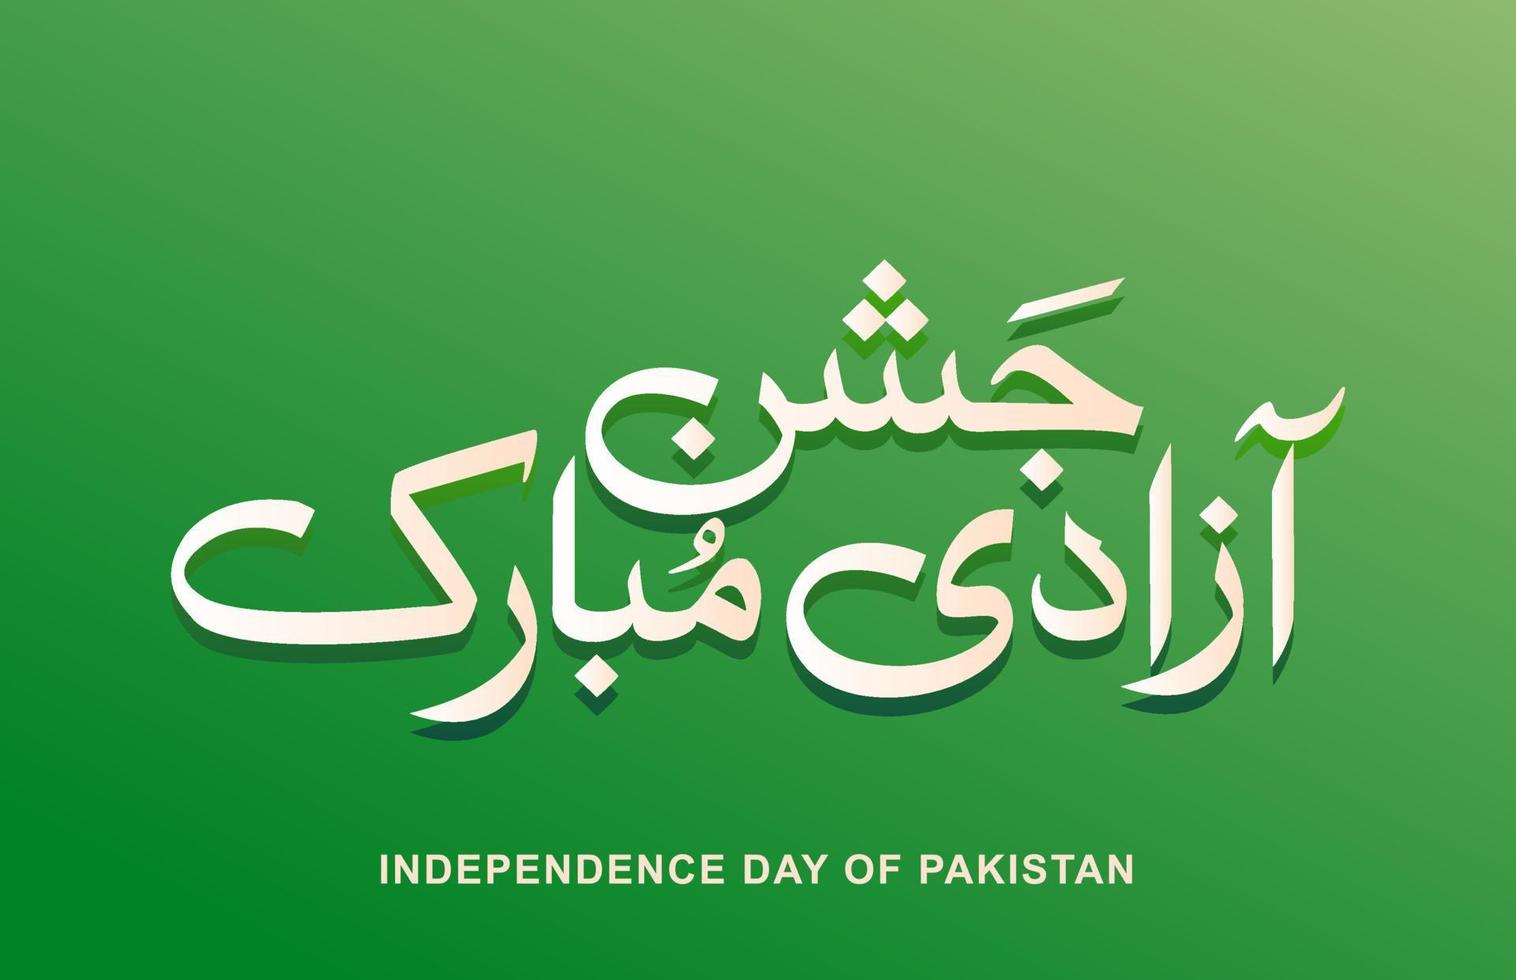 jashn e azadi mubarak pakistan unabhängigkeitstag urdu kalligrafie grün und weiß vektor